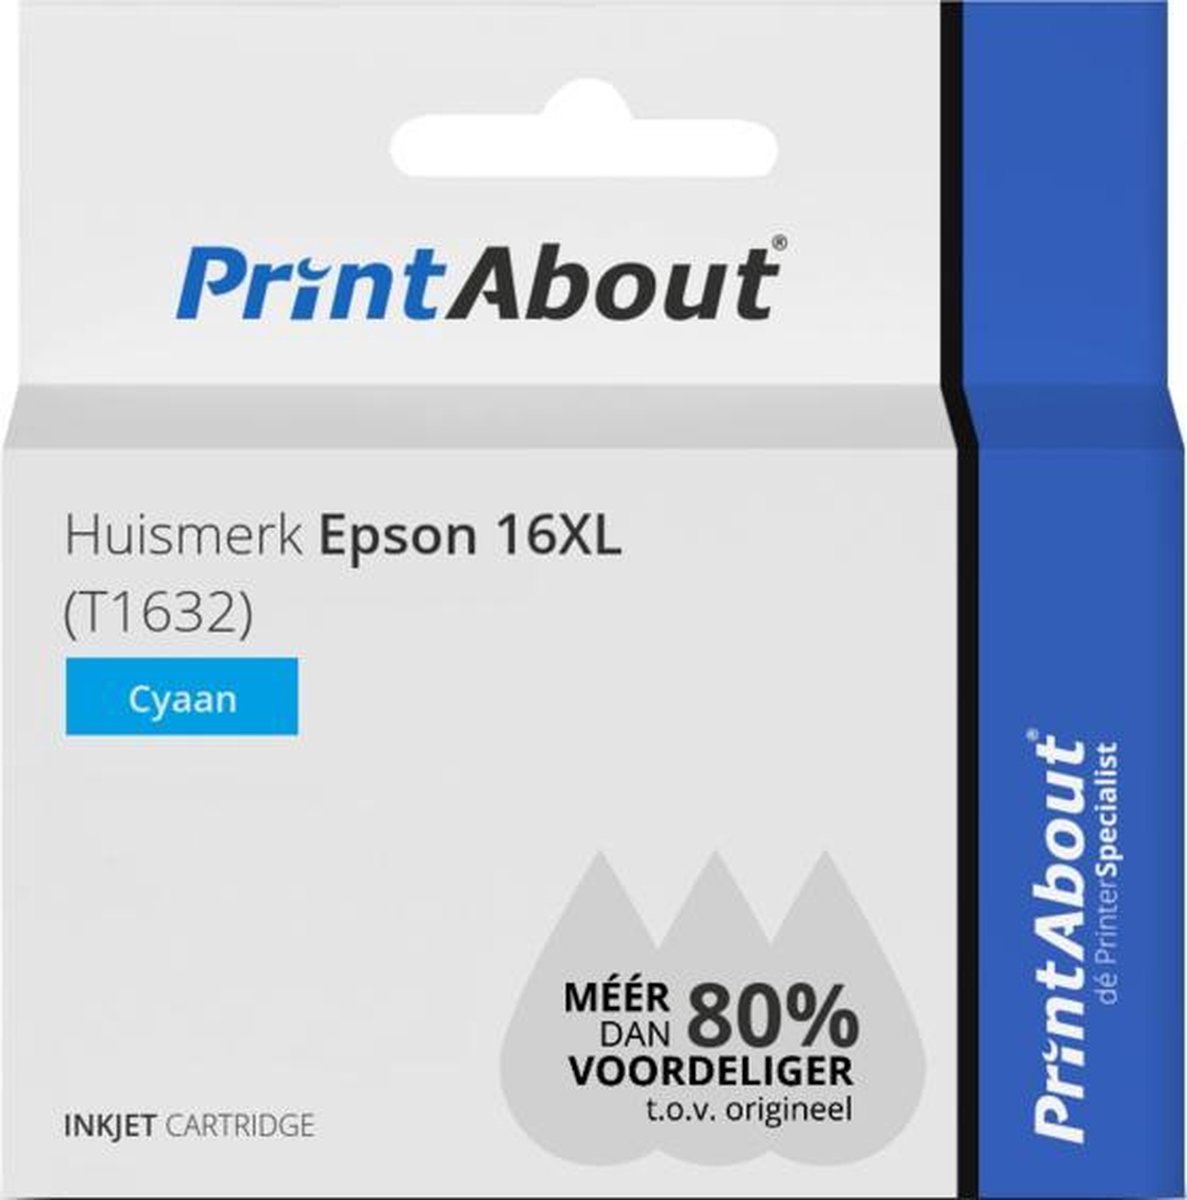 PrintAbout Huismerk Epson 16XL (T1632) Inktcartridge Cyaan Hoge capaciteit